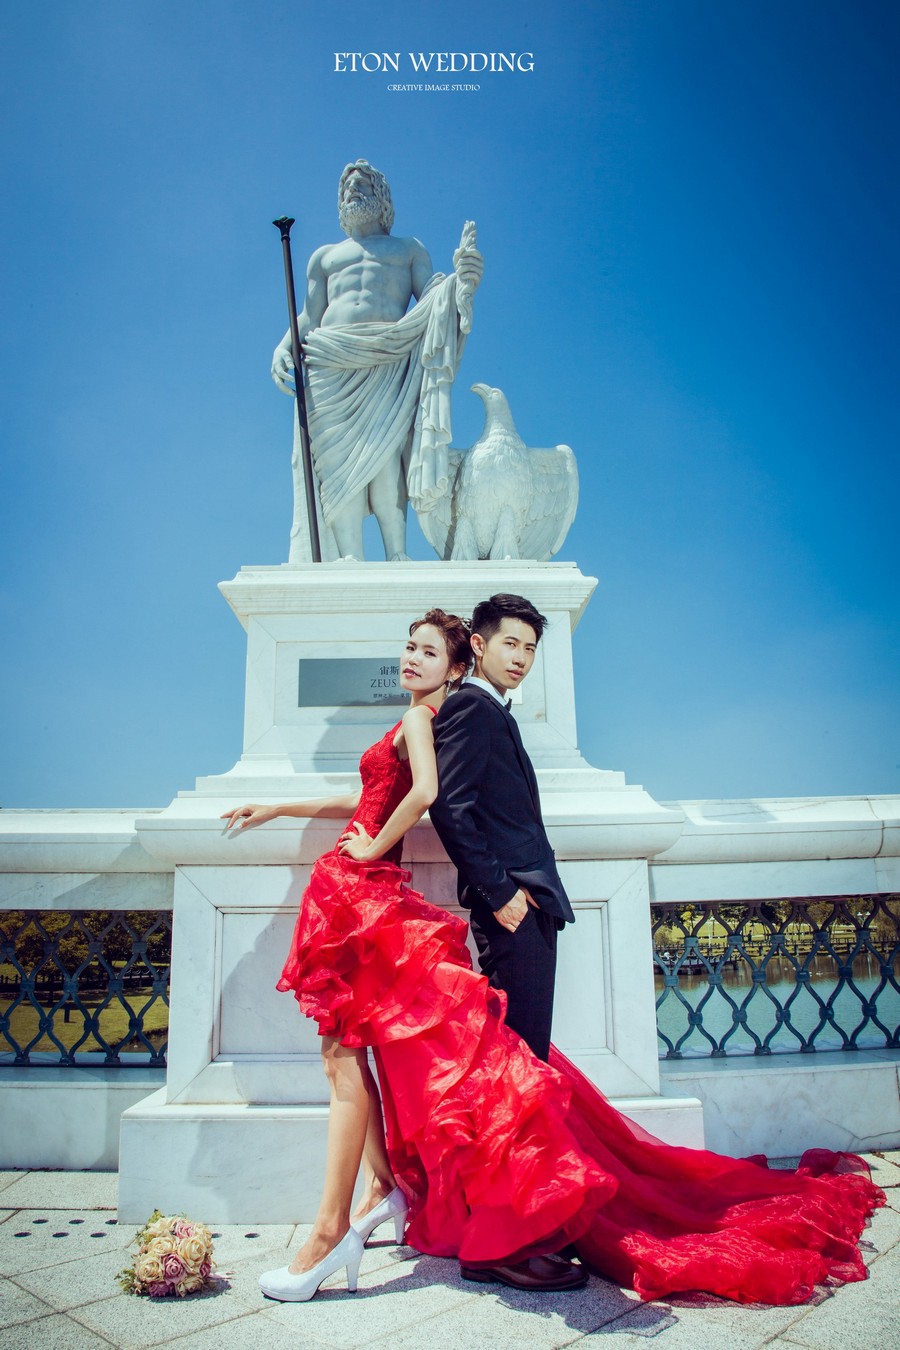 台北 自助婚紗費用,台北 婚紗攝影 價格,台北 自助婚紗推薦,台北 拍婚紗,台北 自助婚紗2021